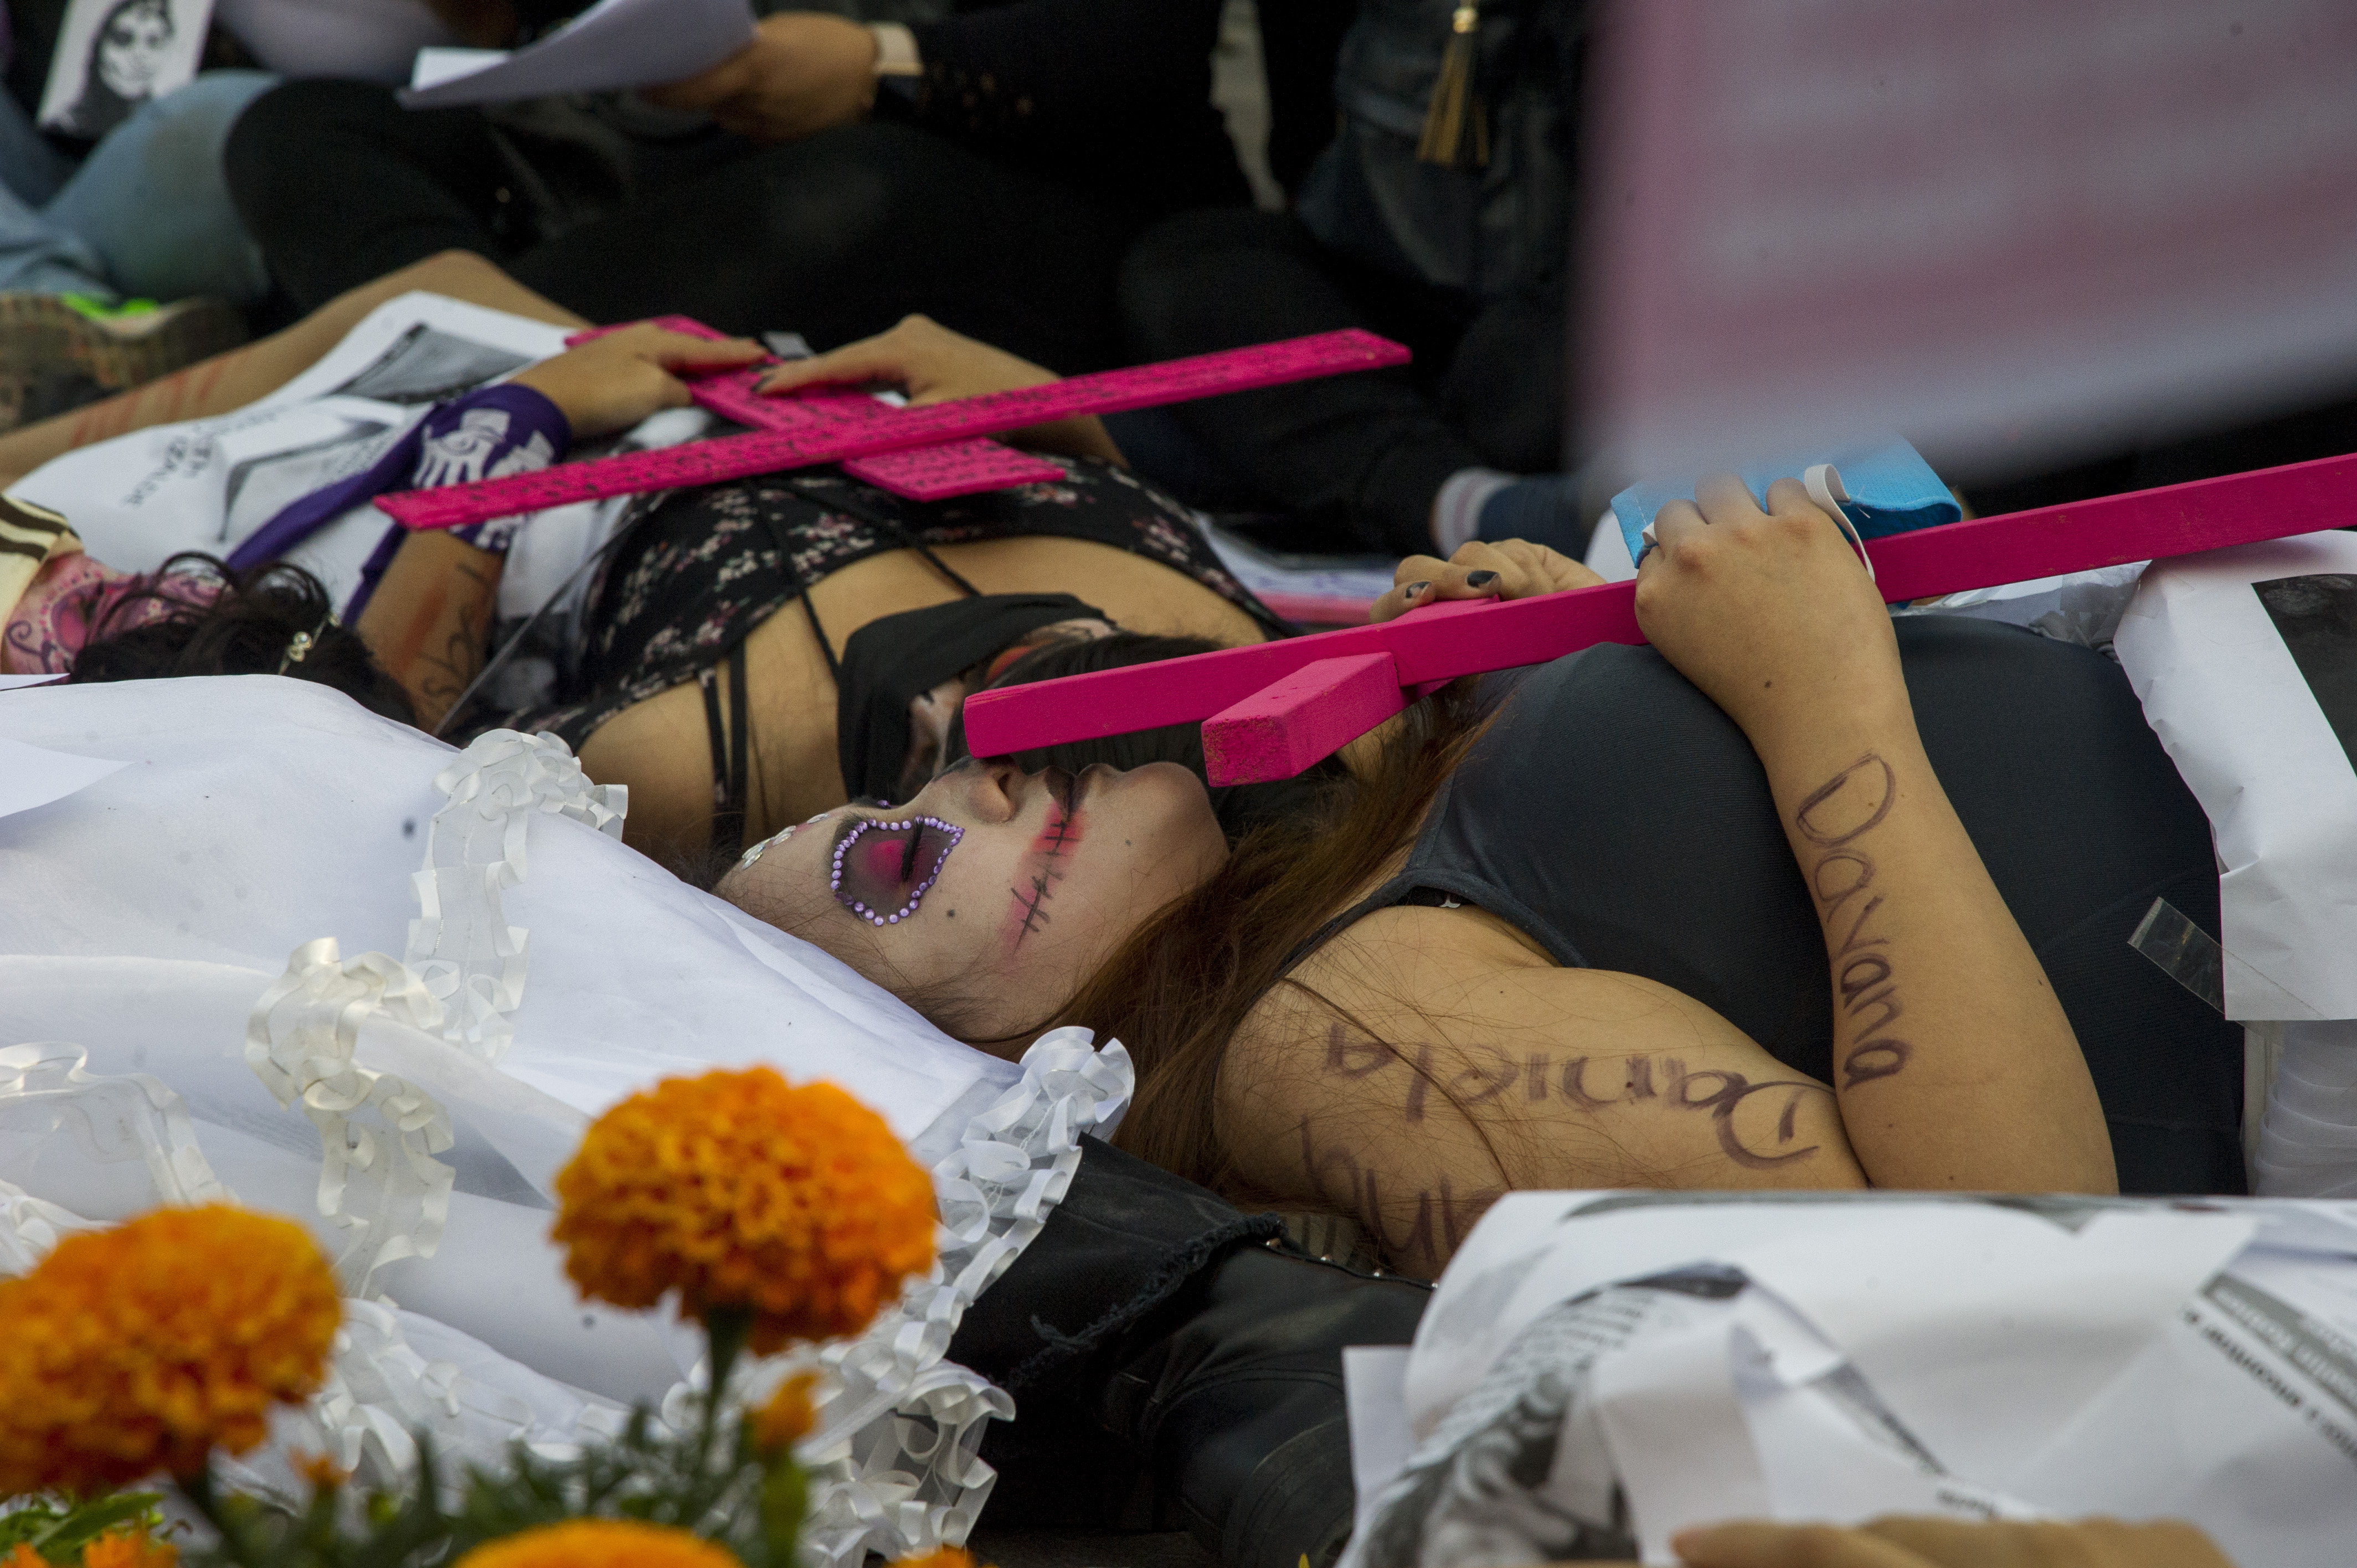 Las manifestaciones feministas han sido criticadas y reprimidas durante el gobierno de Sheinbaum (Foto: CLAUDIO CRUZ / AFP)